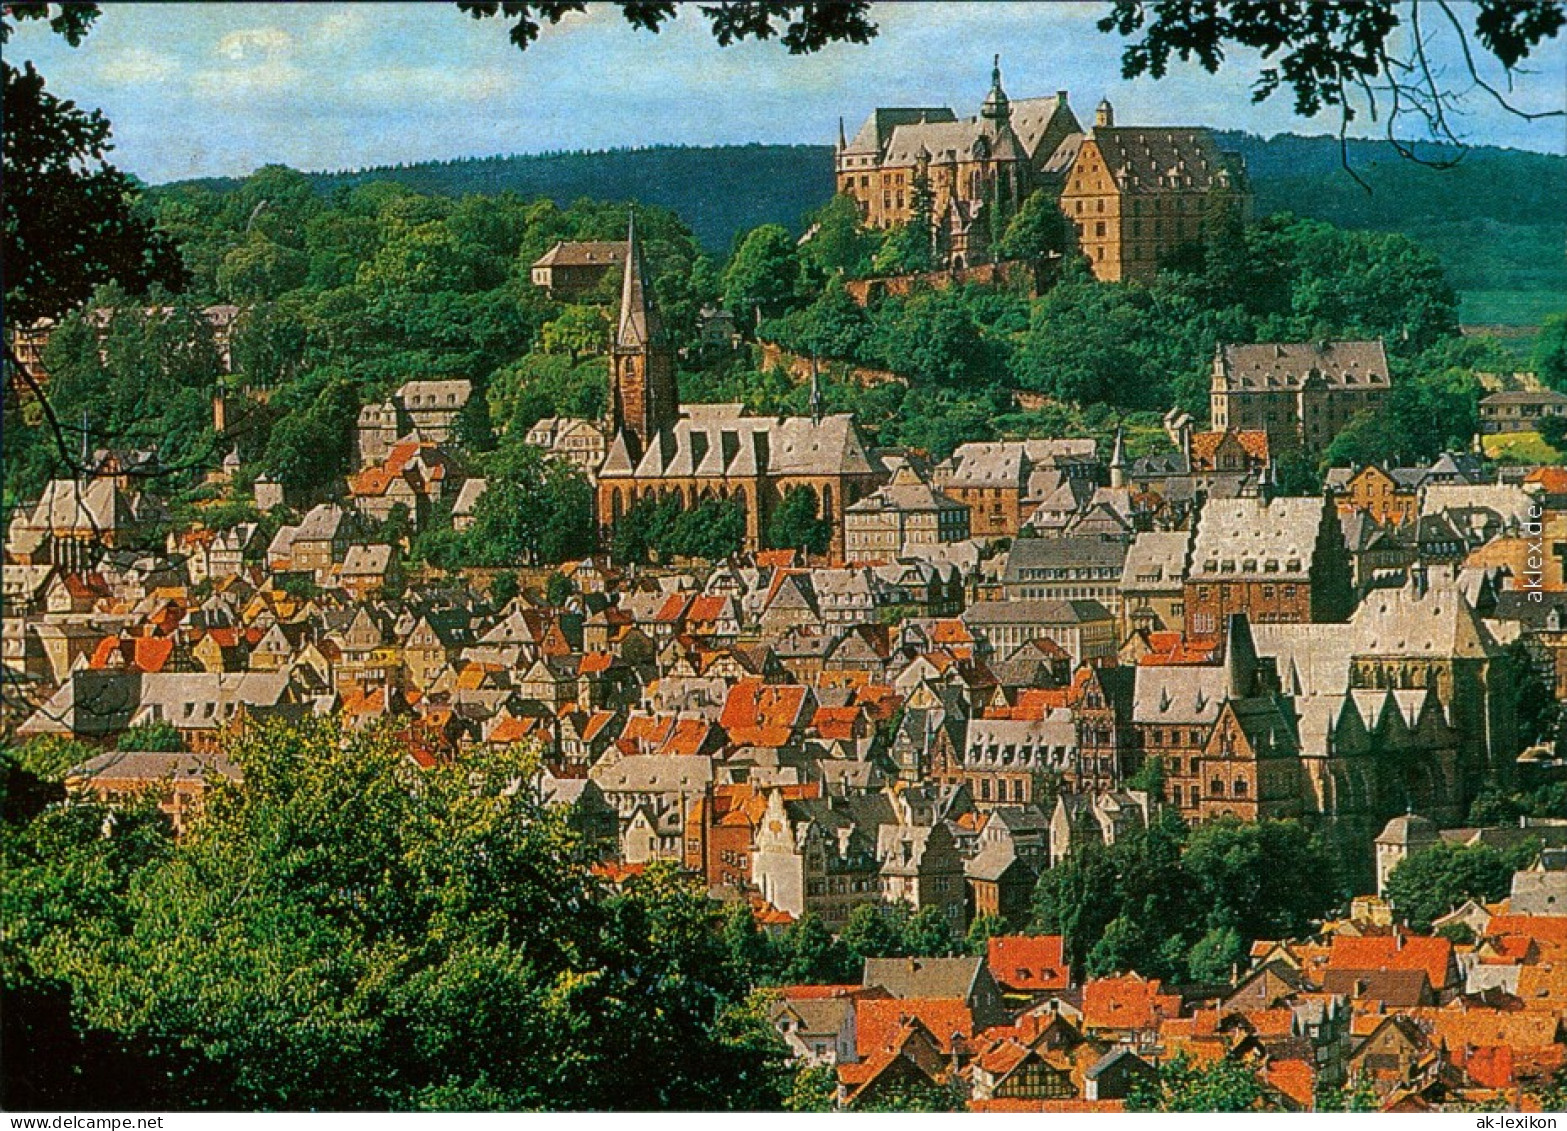 Ansichtskarte Marburg An Der Lahn Schloss 1995 - Marburg